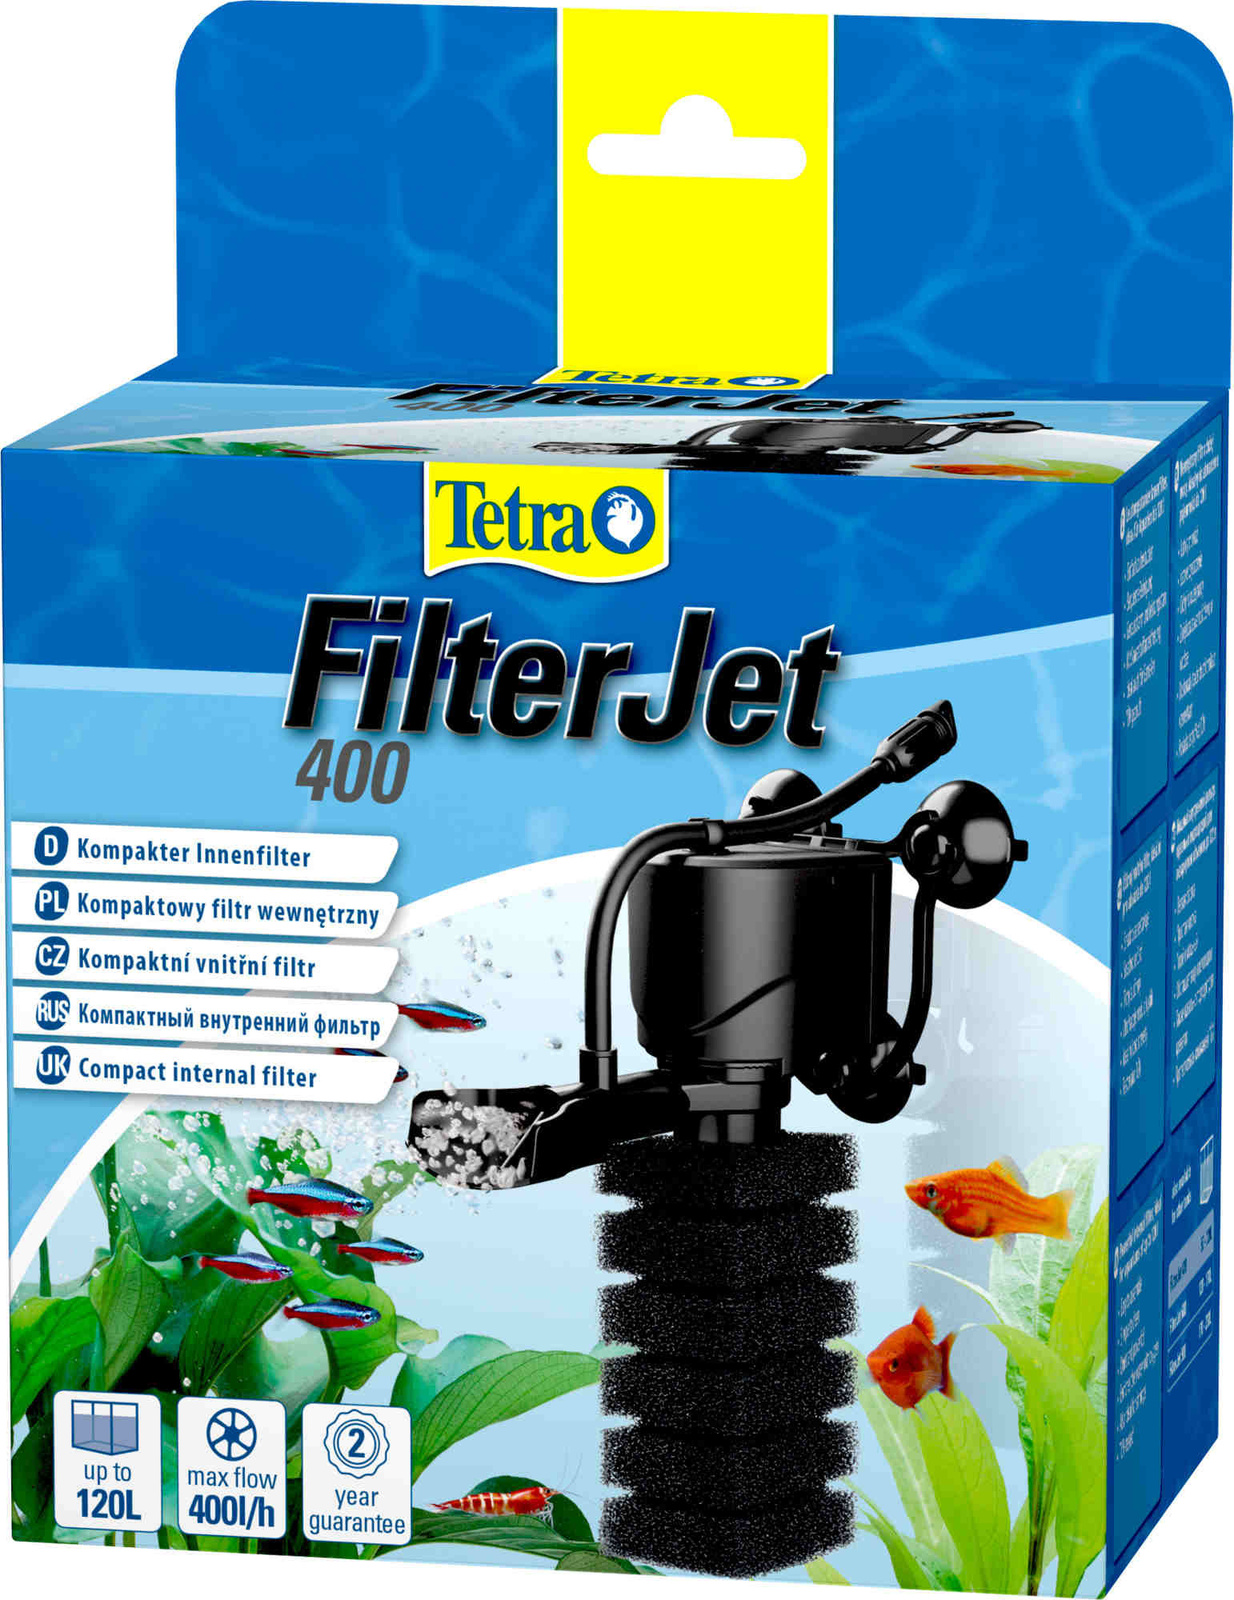 Tetra (оборудование) Tetra (оборудование) внутренний фильтр FilterJet 400, для аквариумов 50 – 120л (460 г) tetra оборудование tetra оборудование чистящие салфетки для аквариума 10 шт 60 г